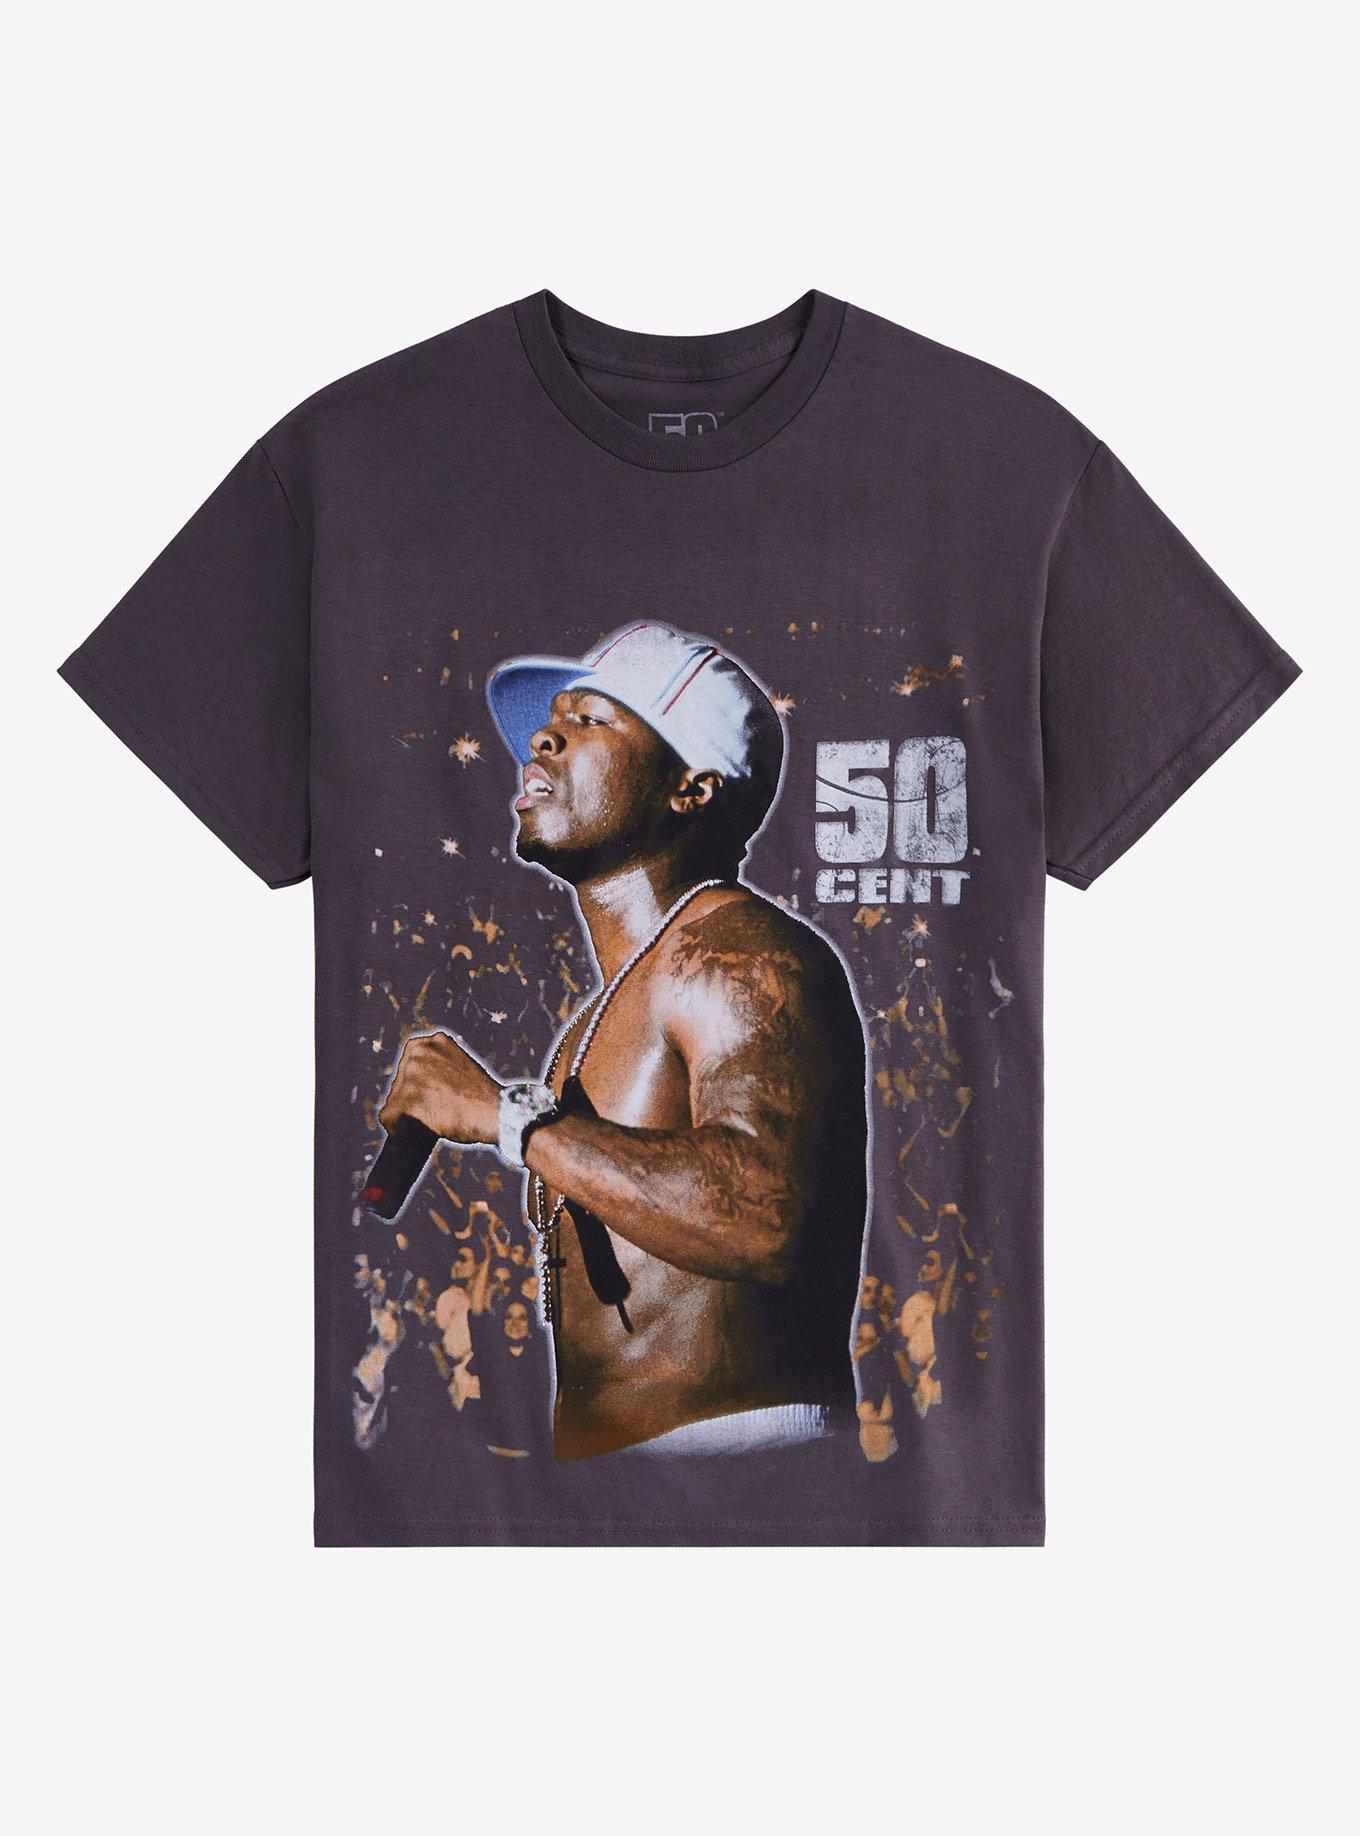 50 Cent Live Photo T-Shirt